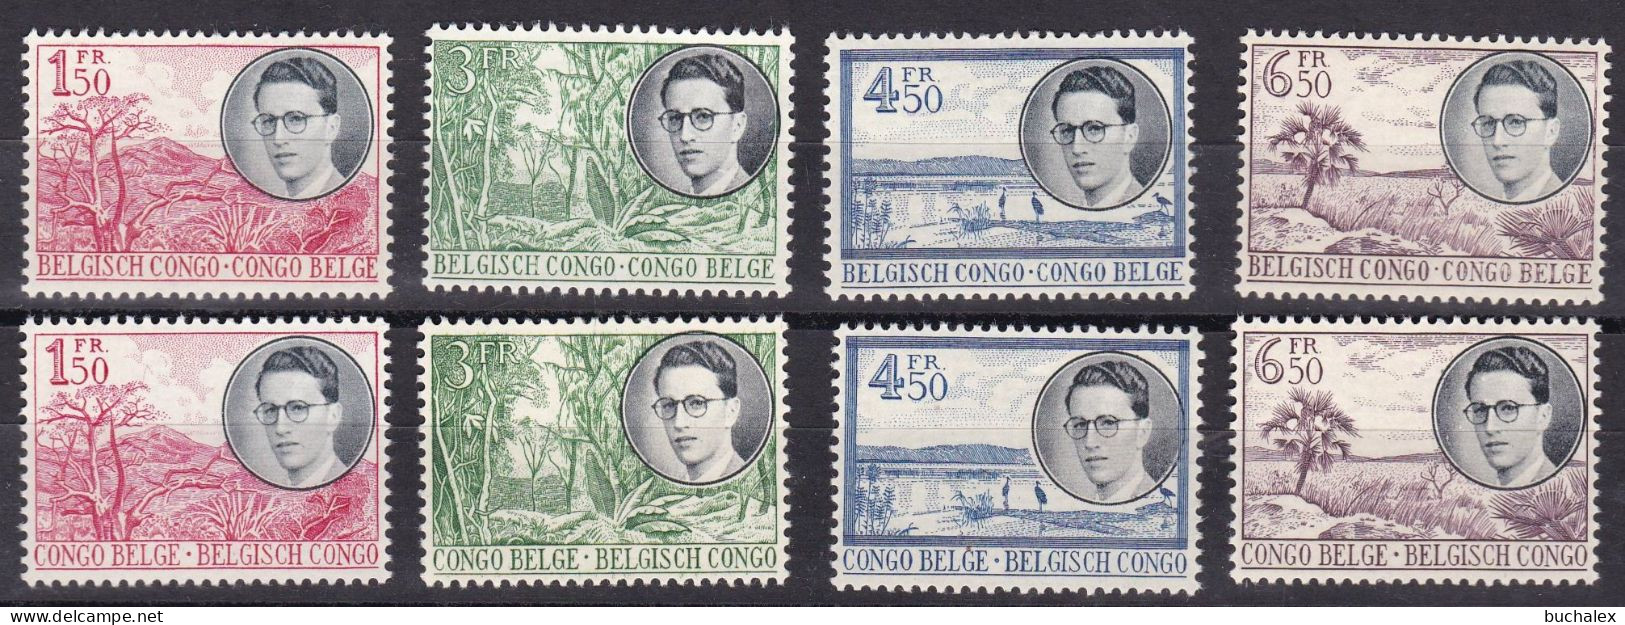 Belgisch-Kongo 1955 - Série Complète Baudouin & Paysages 90 Euro Cob # 329/336 - Unused Stamps